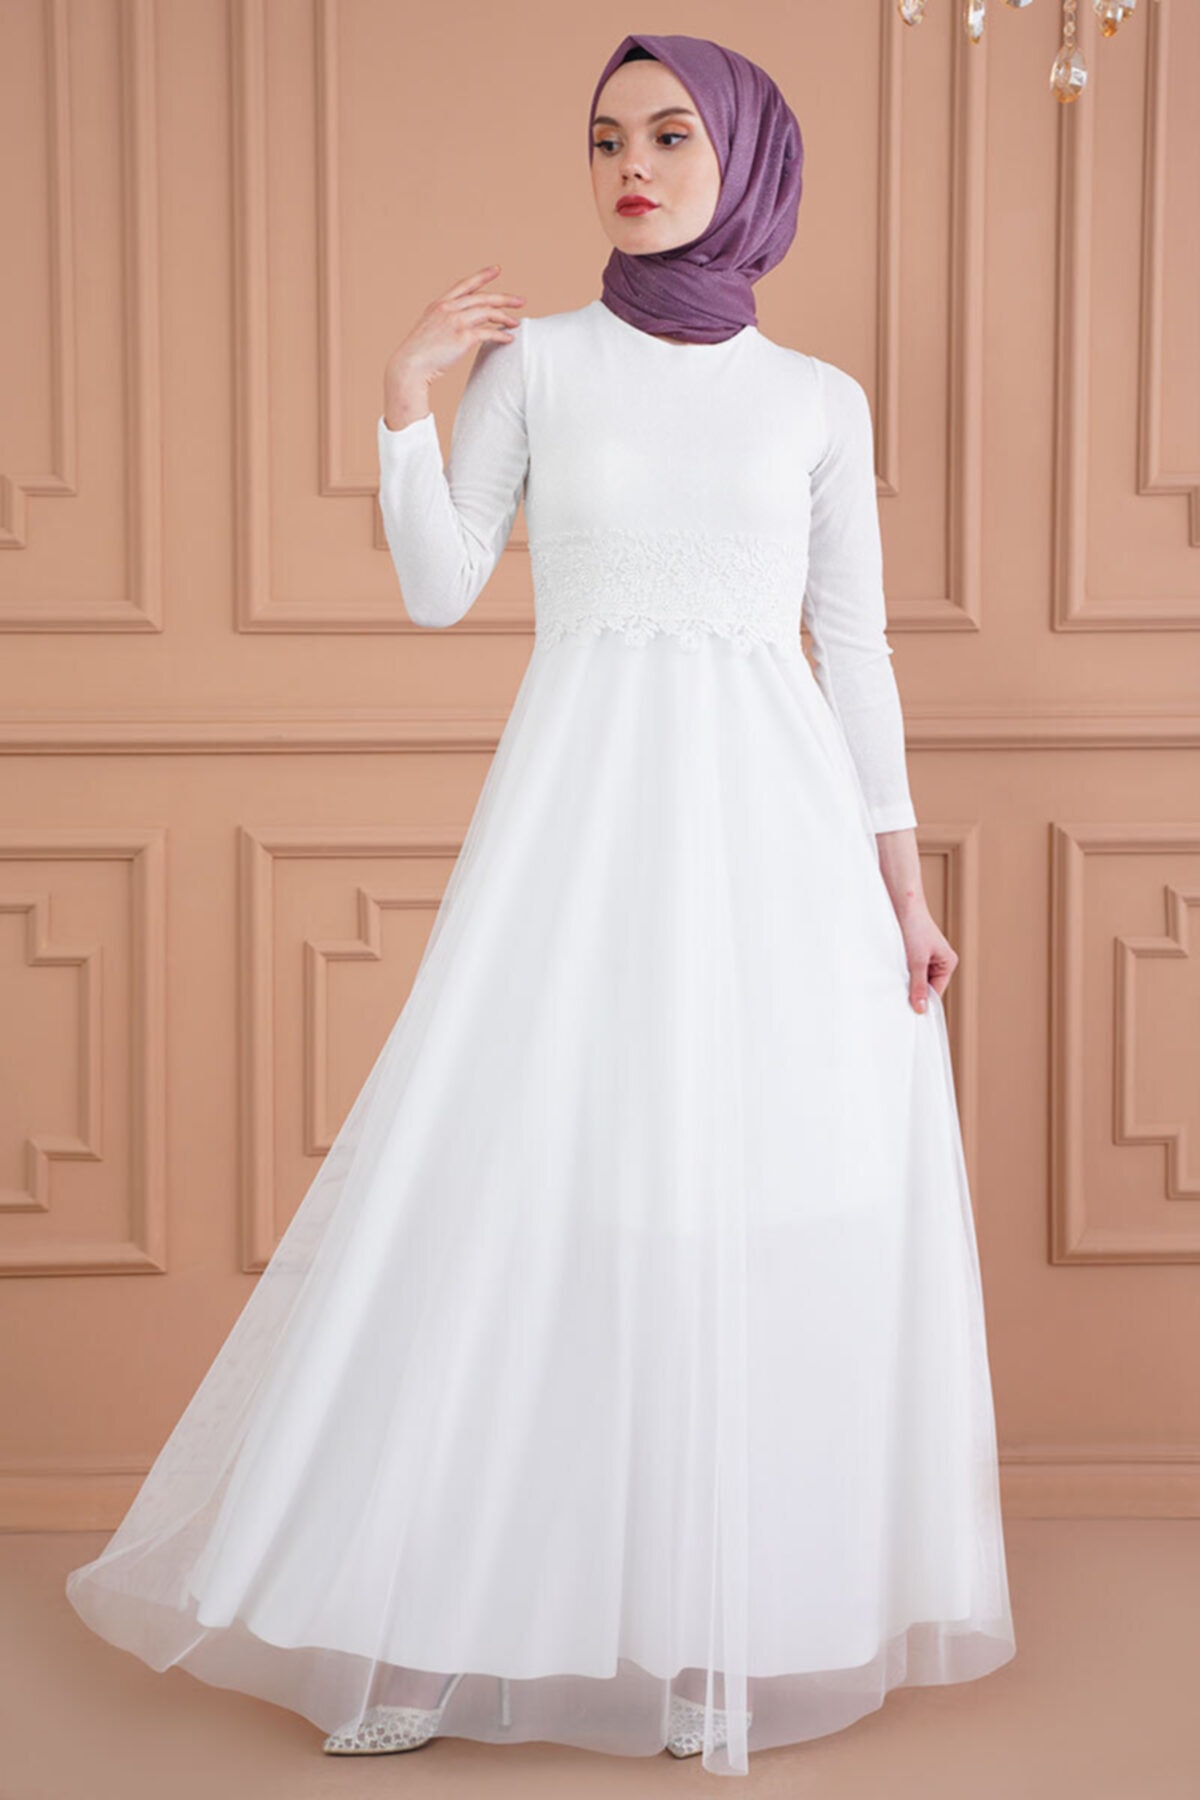 çam ağacı Yerde Öz  Afilva Kadın Tesettür Işıltı Görünümlü Beli Güpürlü Beyaz Abiye Elbise  Fiyatı, Yorumları - TRENDYOL